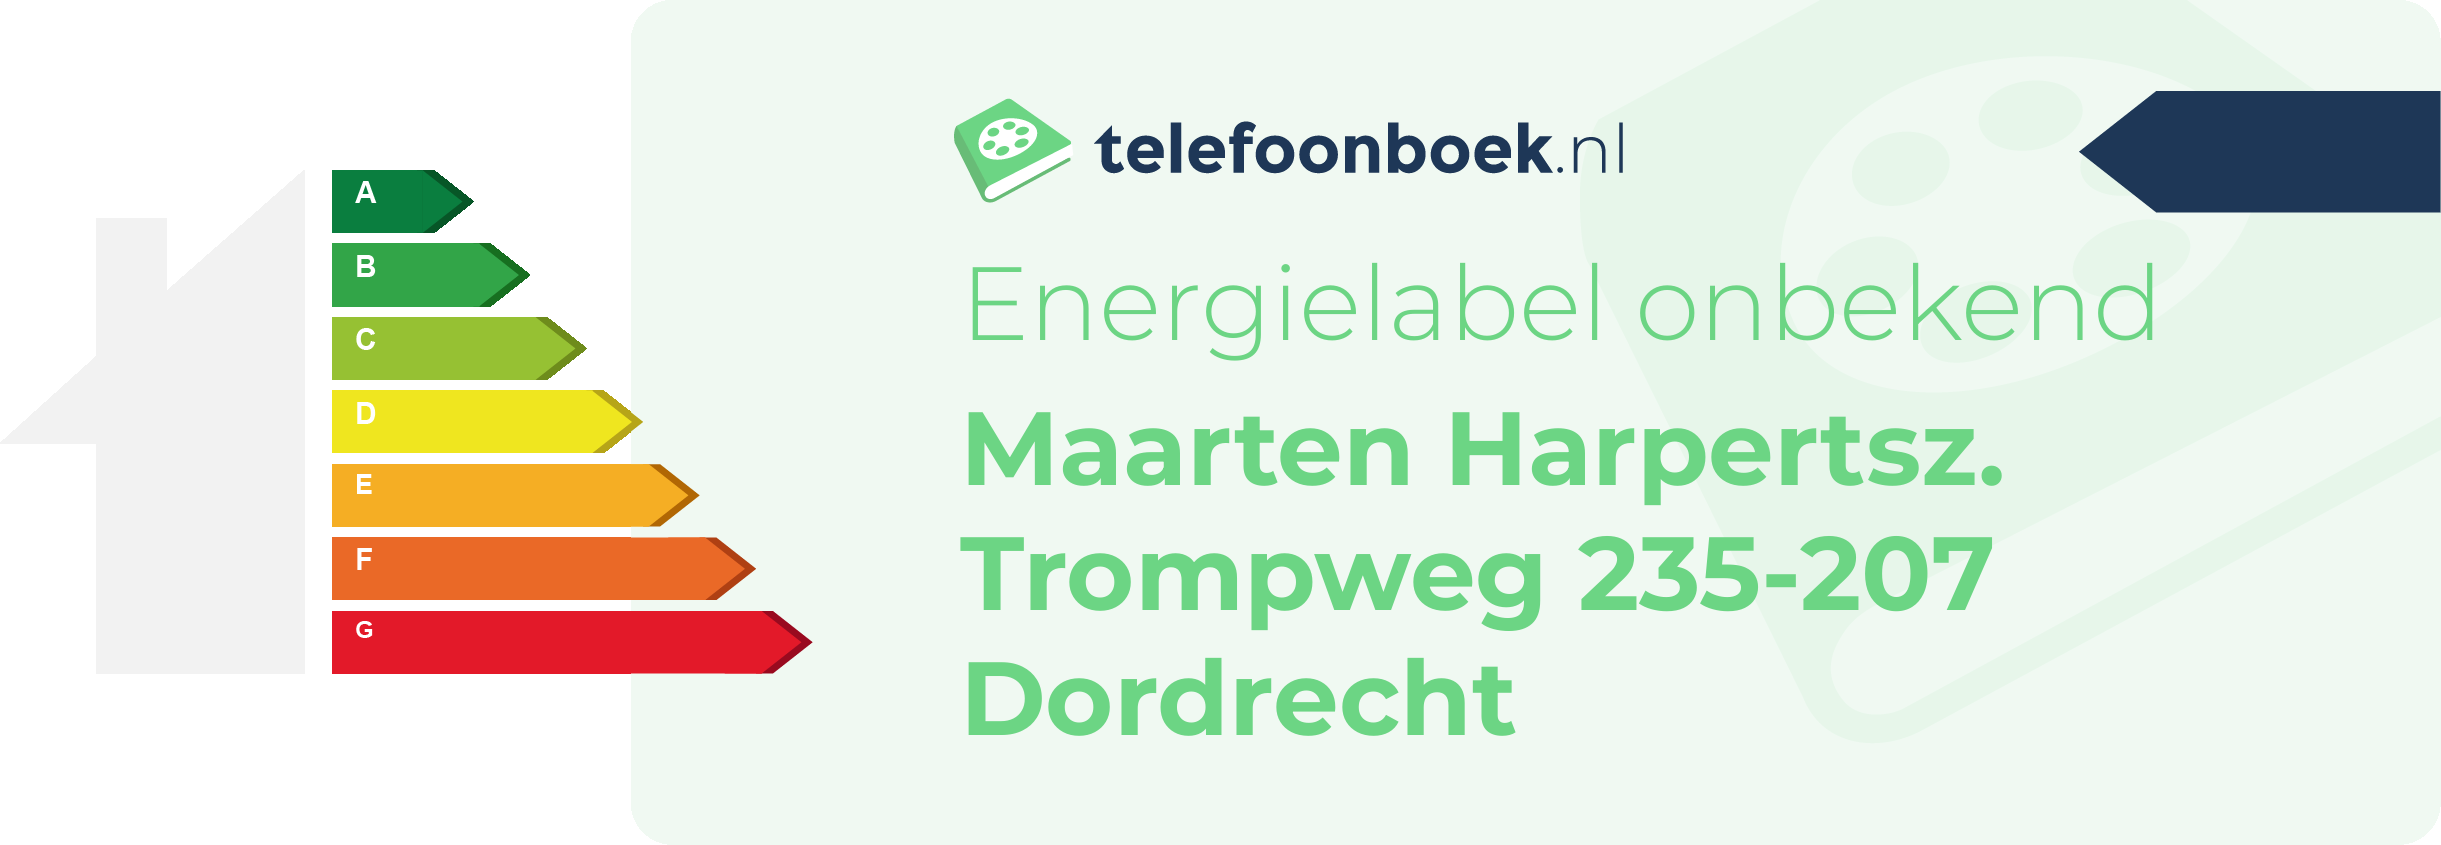 Energielabel Maarten Harpertsz. Trompweg 235-207 Dordrecht